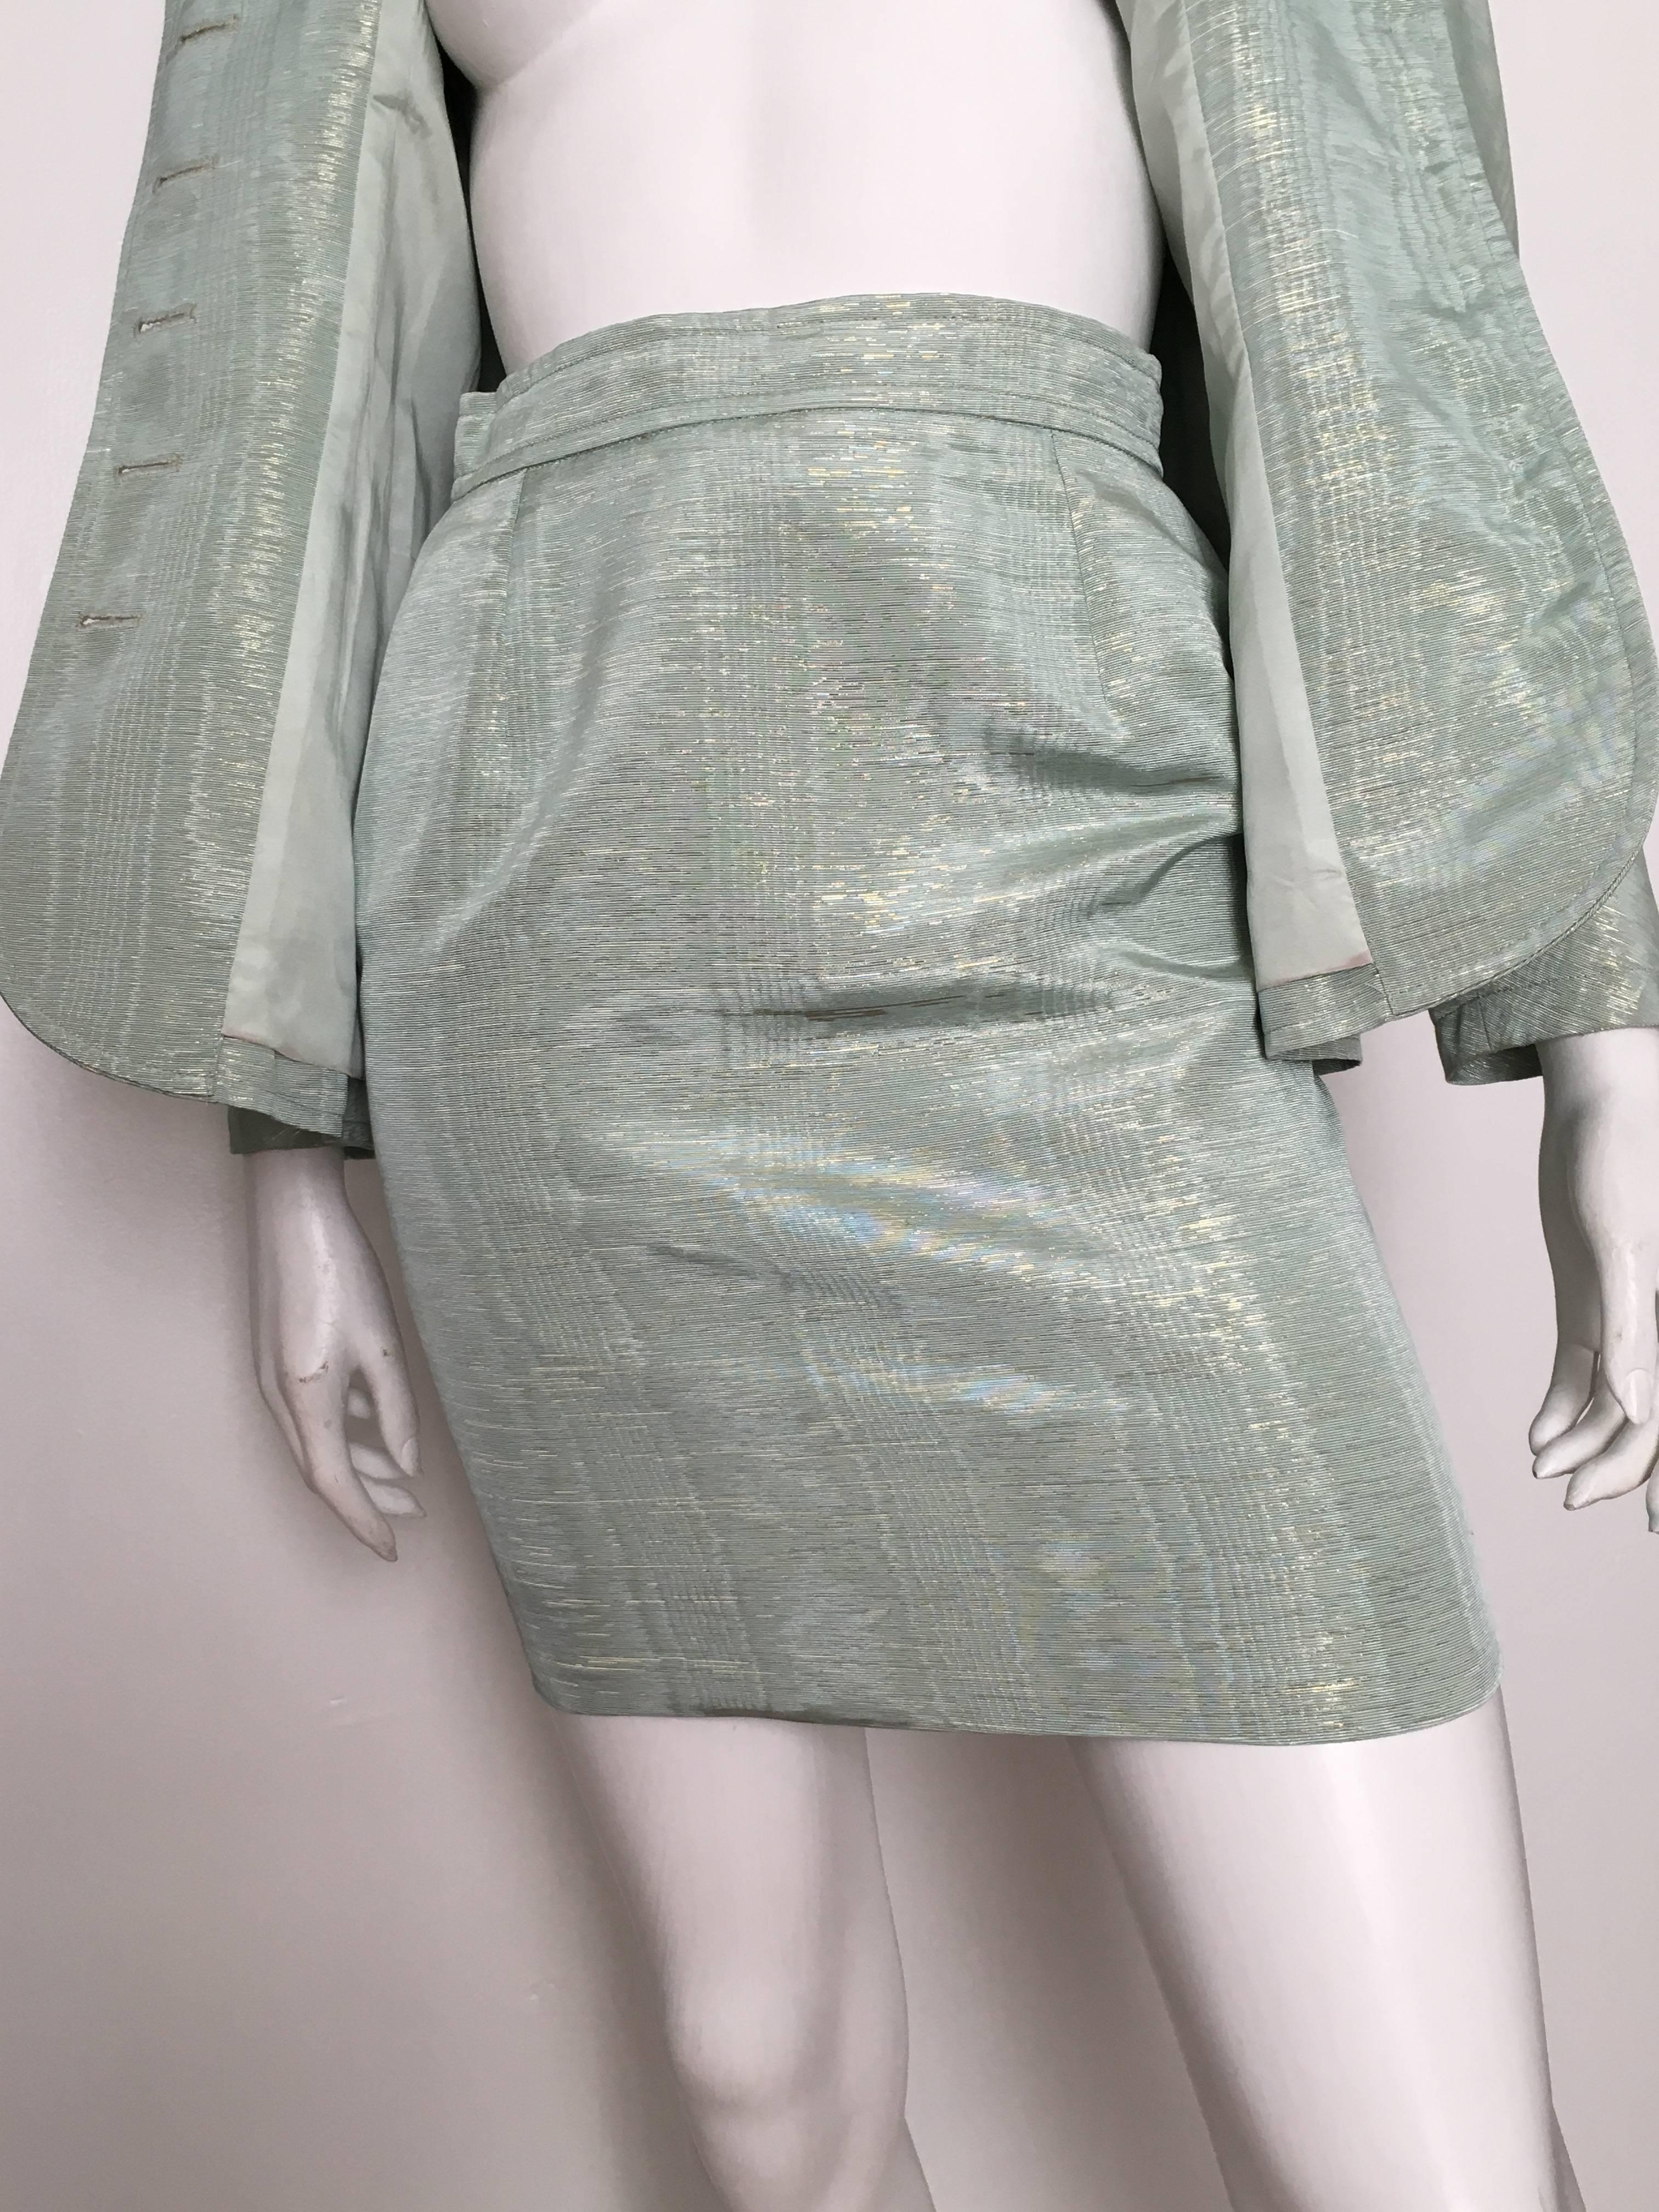 Christian Lacroix 1995 Aqua Skirt Suit Size 2/4. For Sale 3